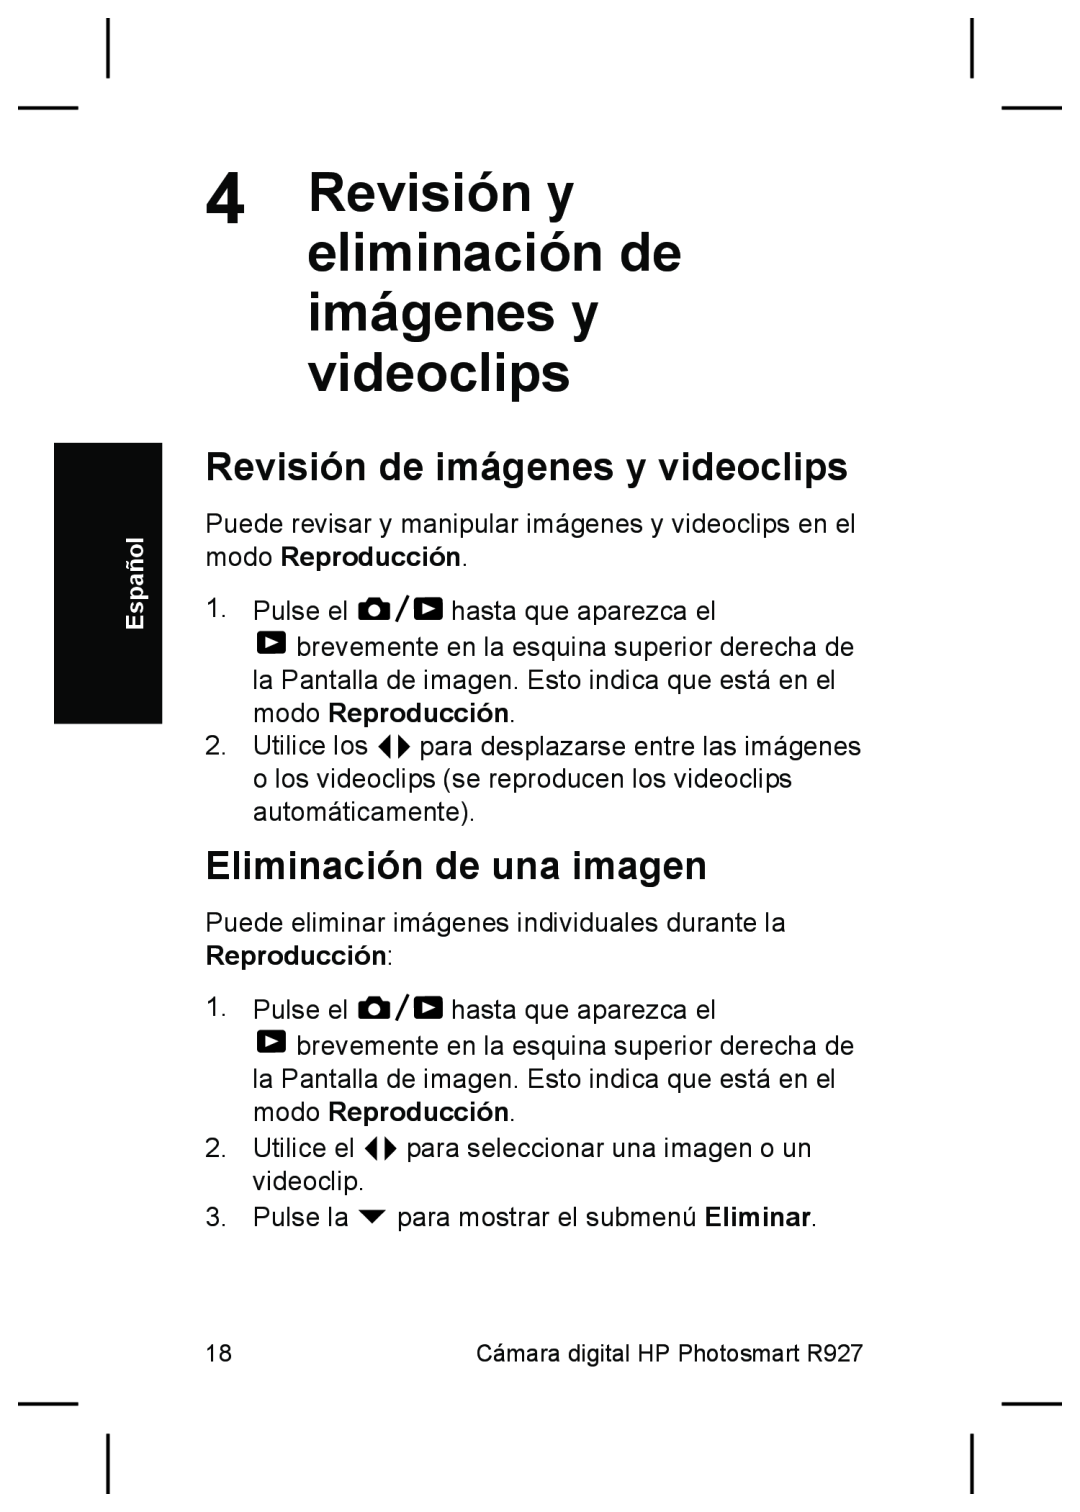 HP R927 Revisión y eliminación de imágenes y videoclips, Revisión de imágenes y videoclips, Eliminación de una imagen 